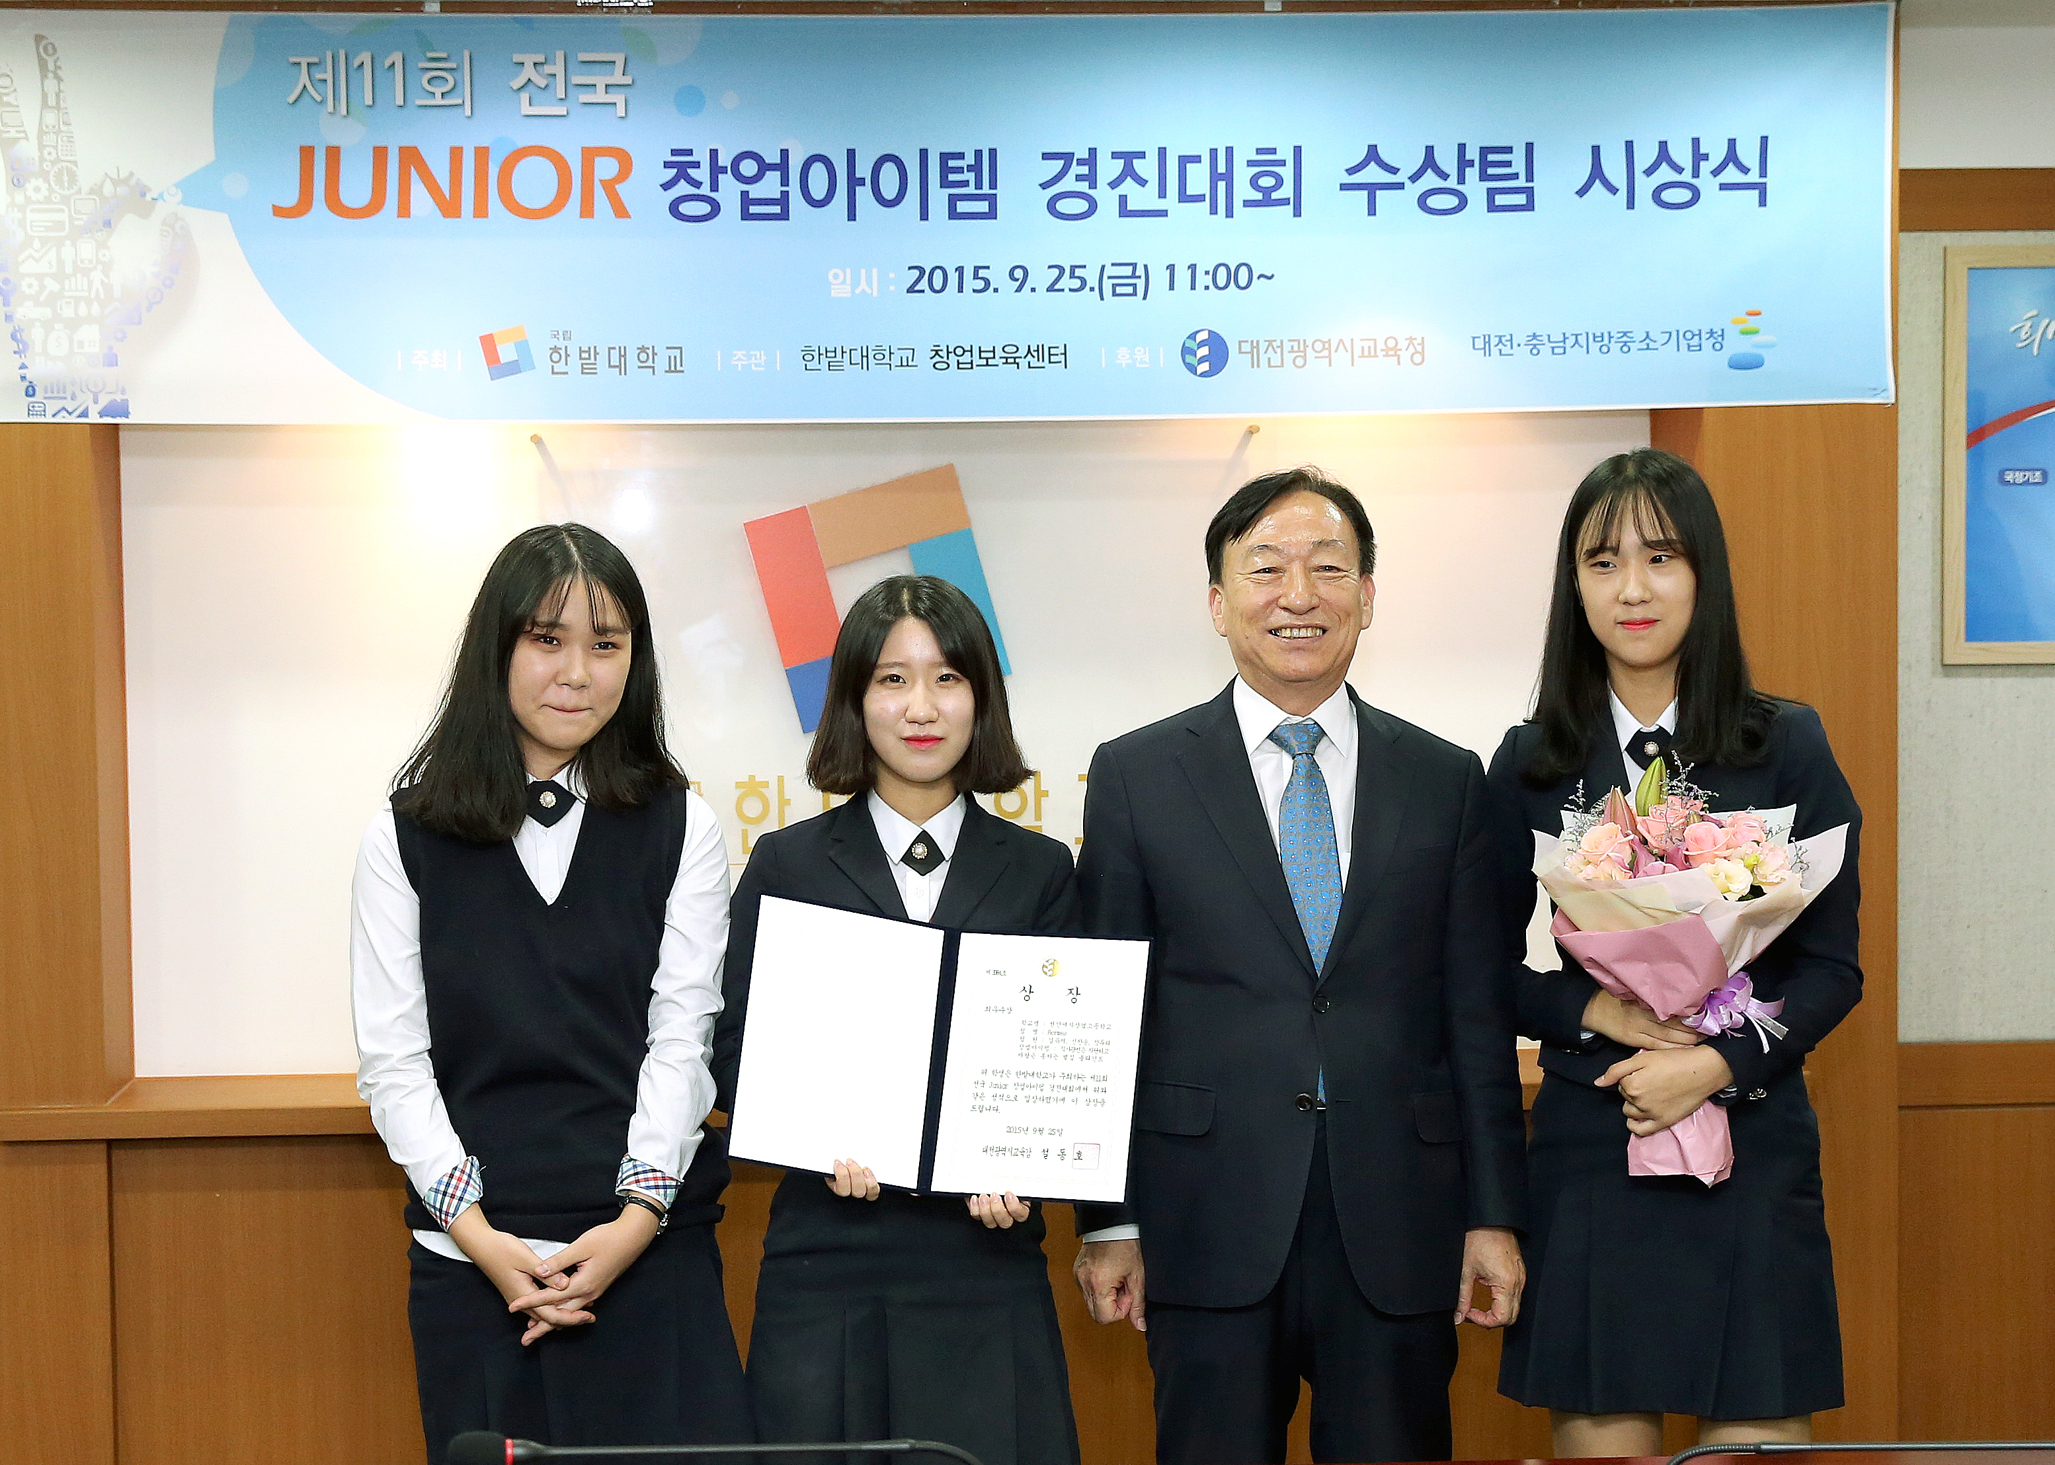 제11회 전국 Junior 경진대회 시상식1번사진